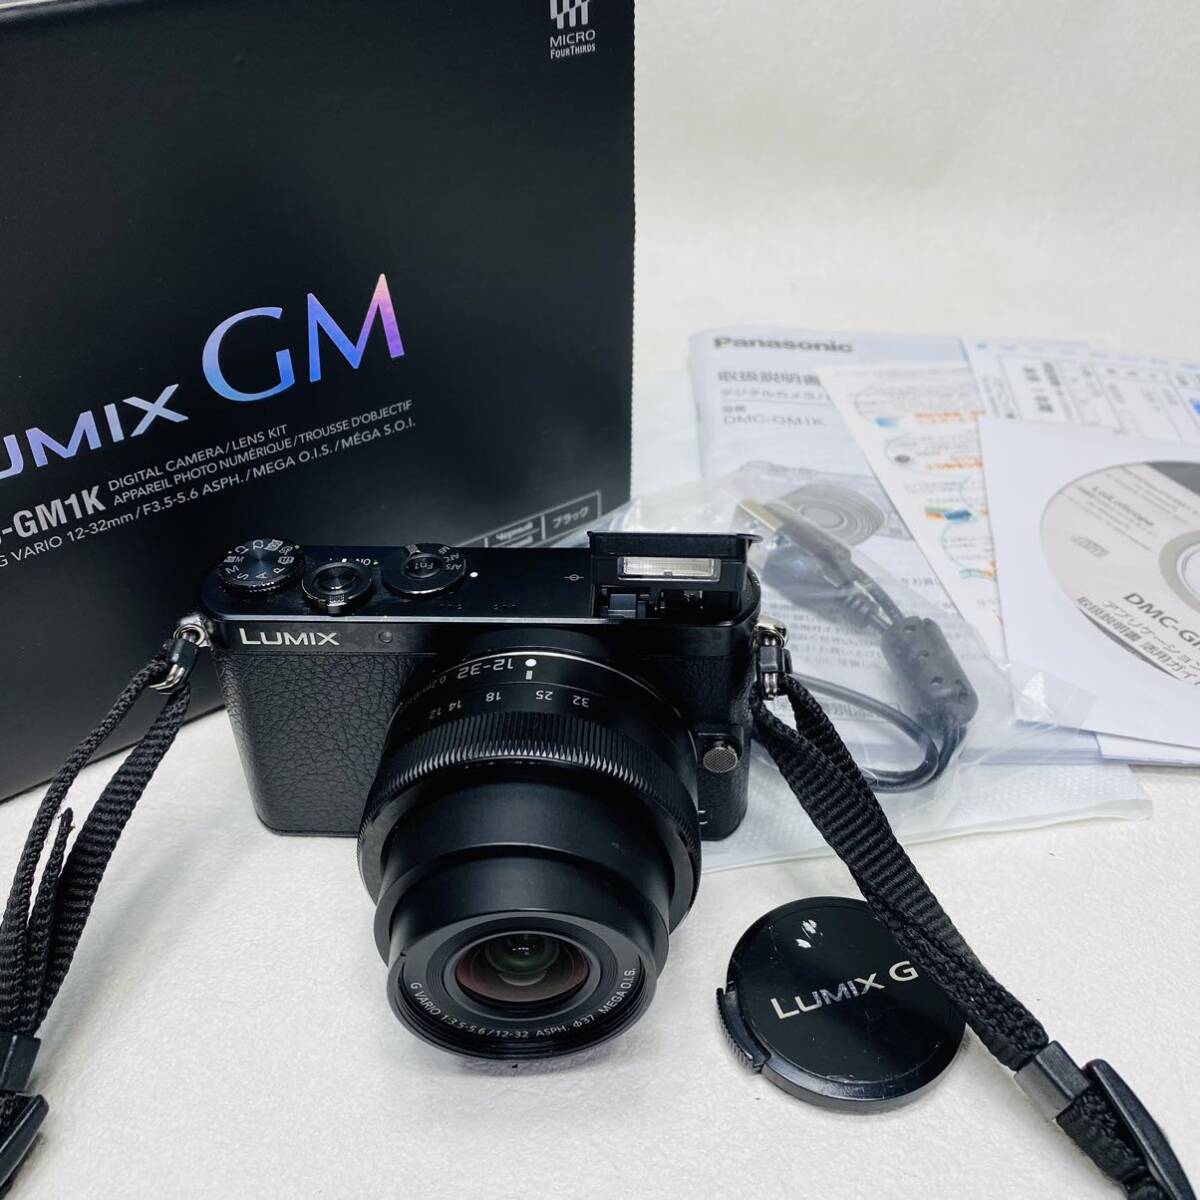 Операция подтверждена! Цифровая камера SLR Panasonic DMC-GM1K со стандартным объективом